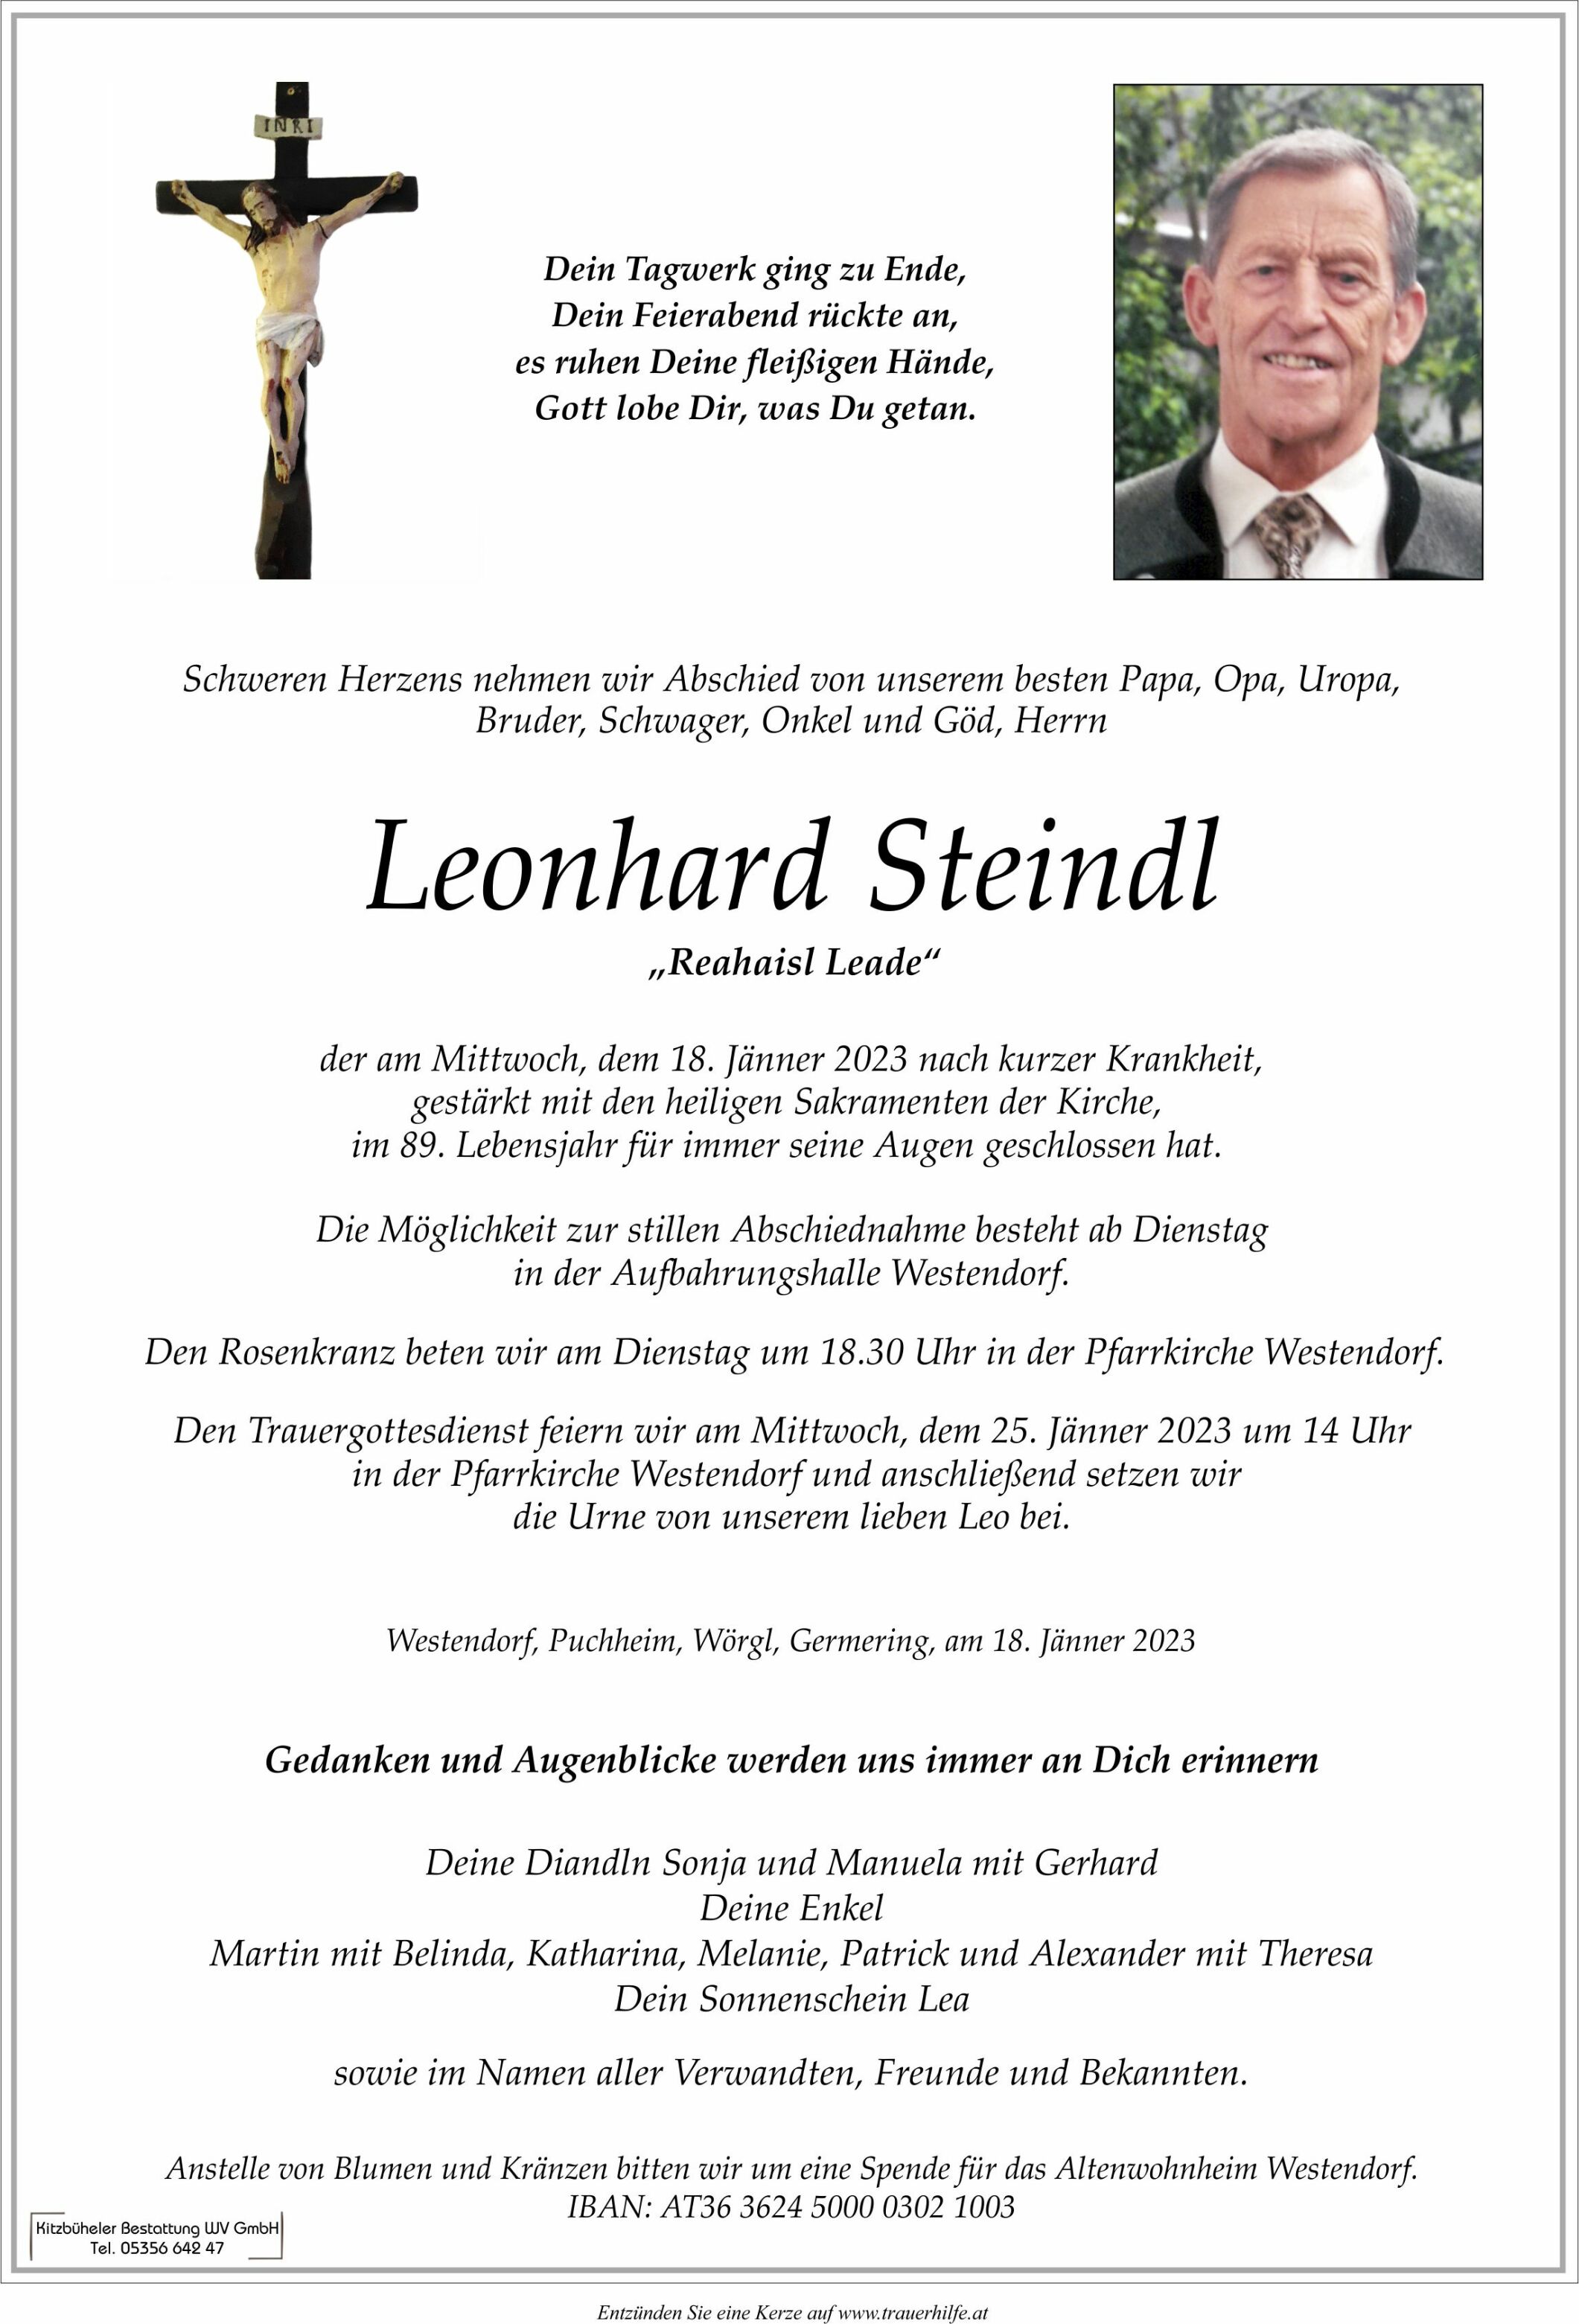 Leonhard Steindl